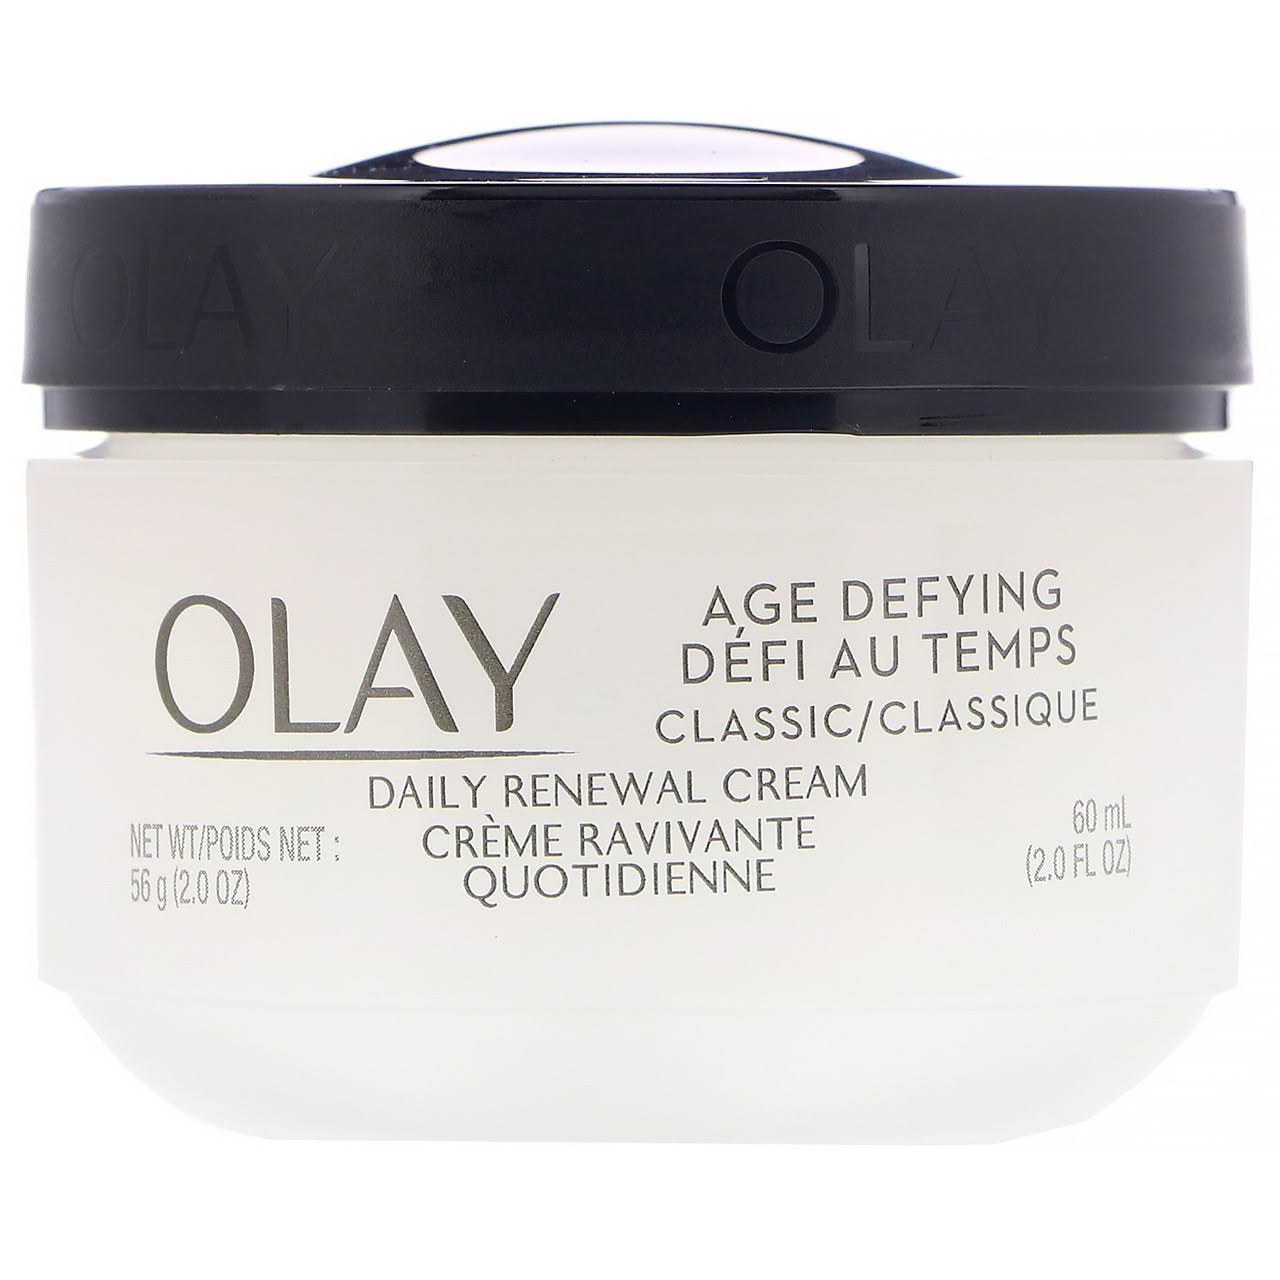 Olay Age Defying Classic Daily Renewal Cream - 2oz